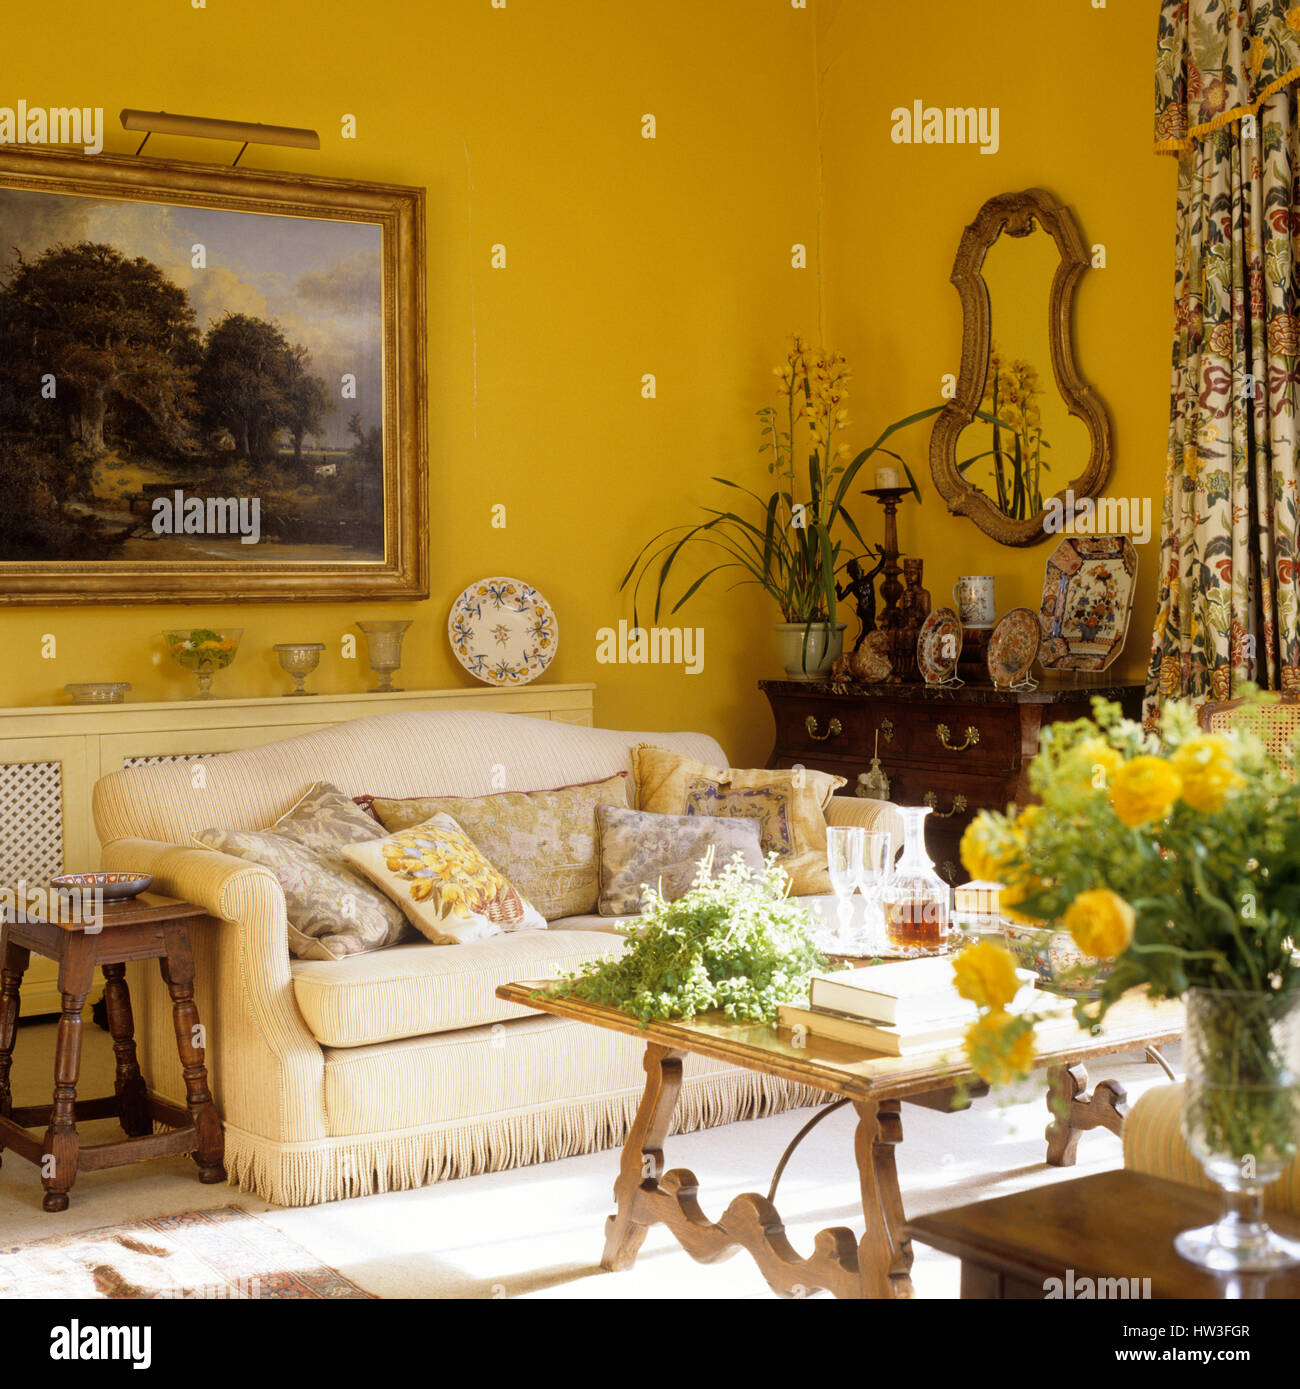 Wohnzimmer mit gelben Wänden. Stockfoto